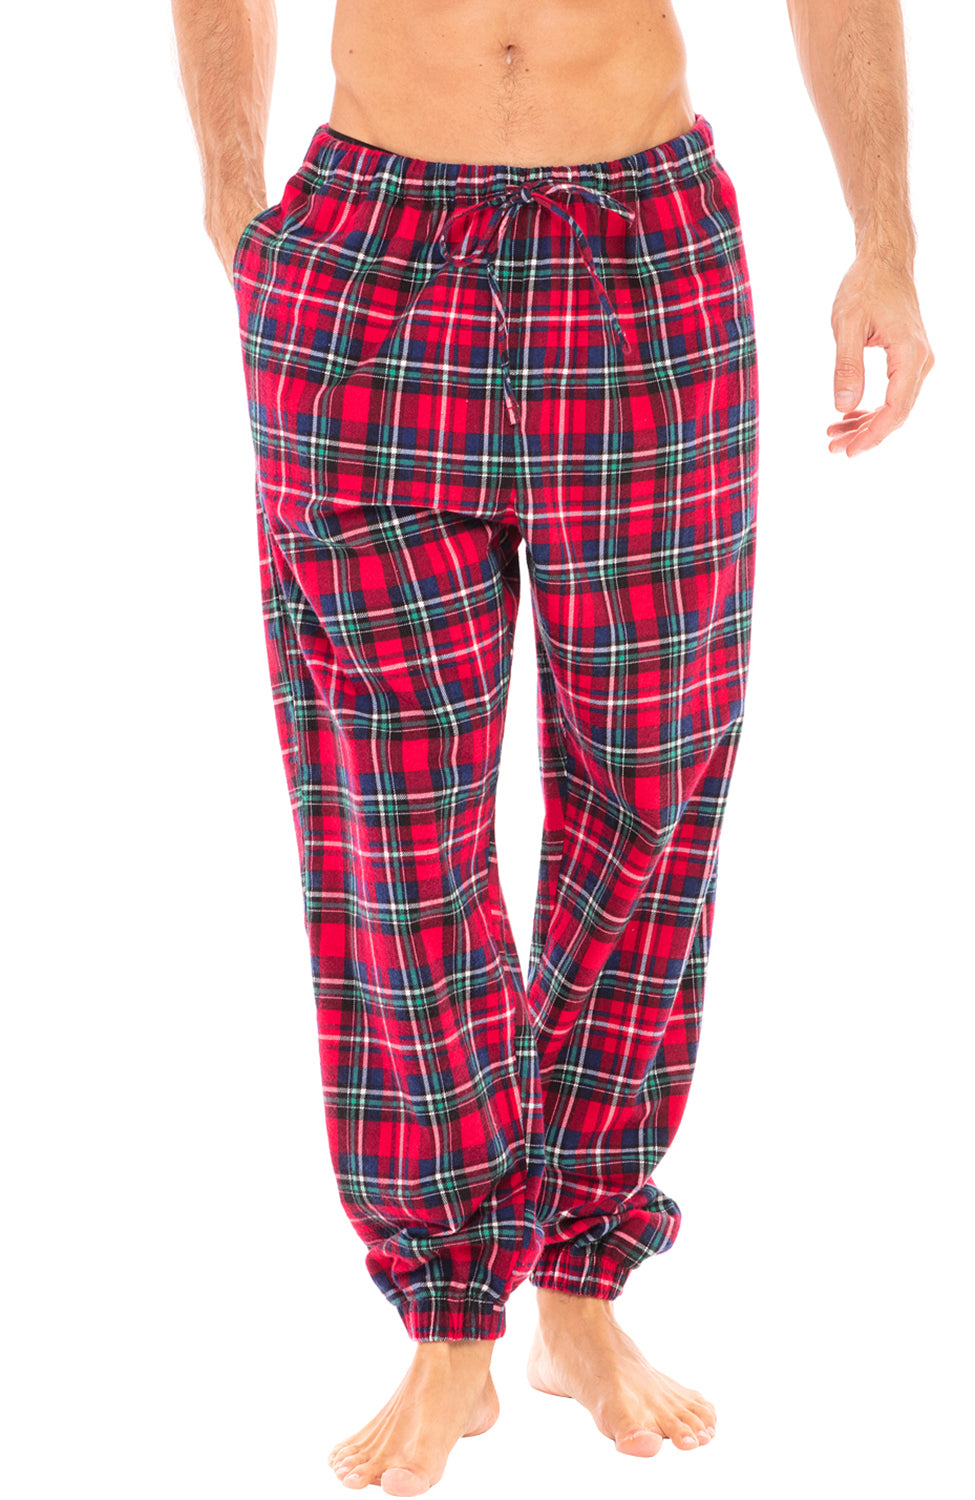 Men's Cotton Flannel Plaid Pajama Sleep Pants Super Soft Lounge Bottoms PJ's